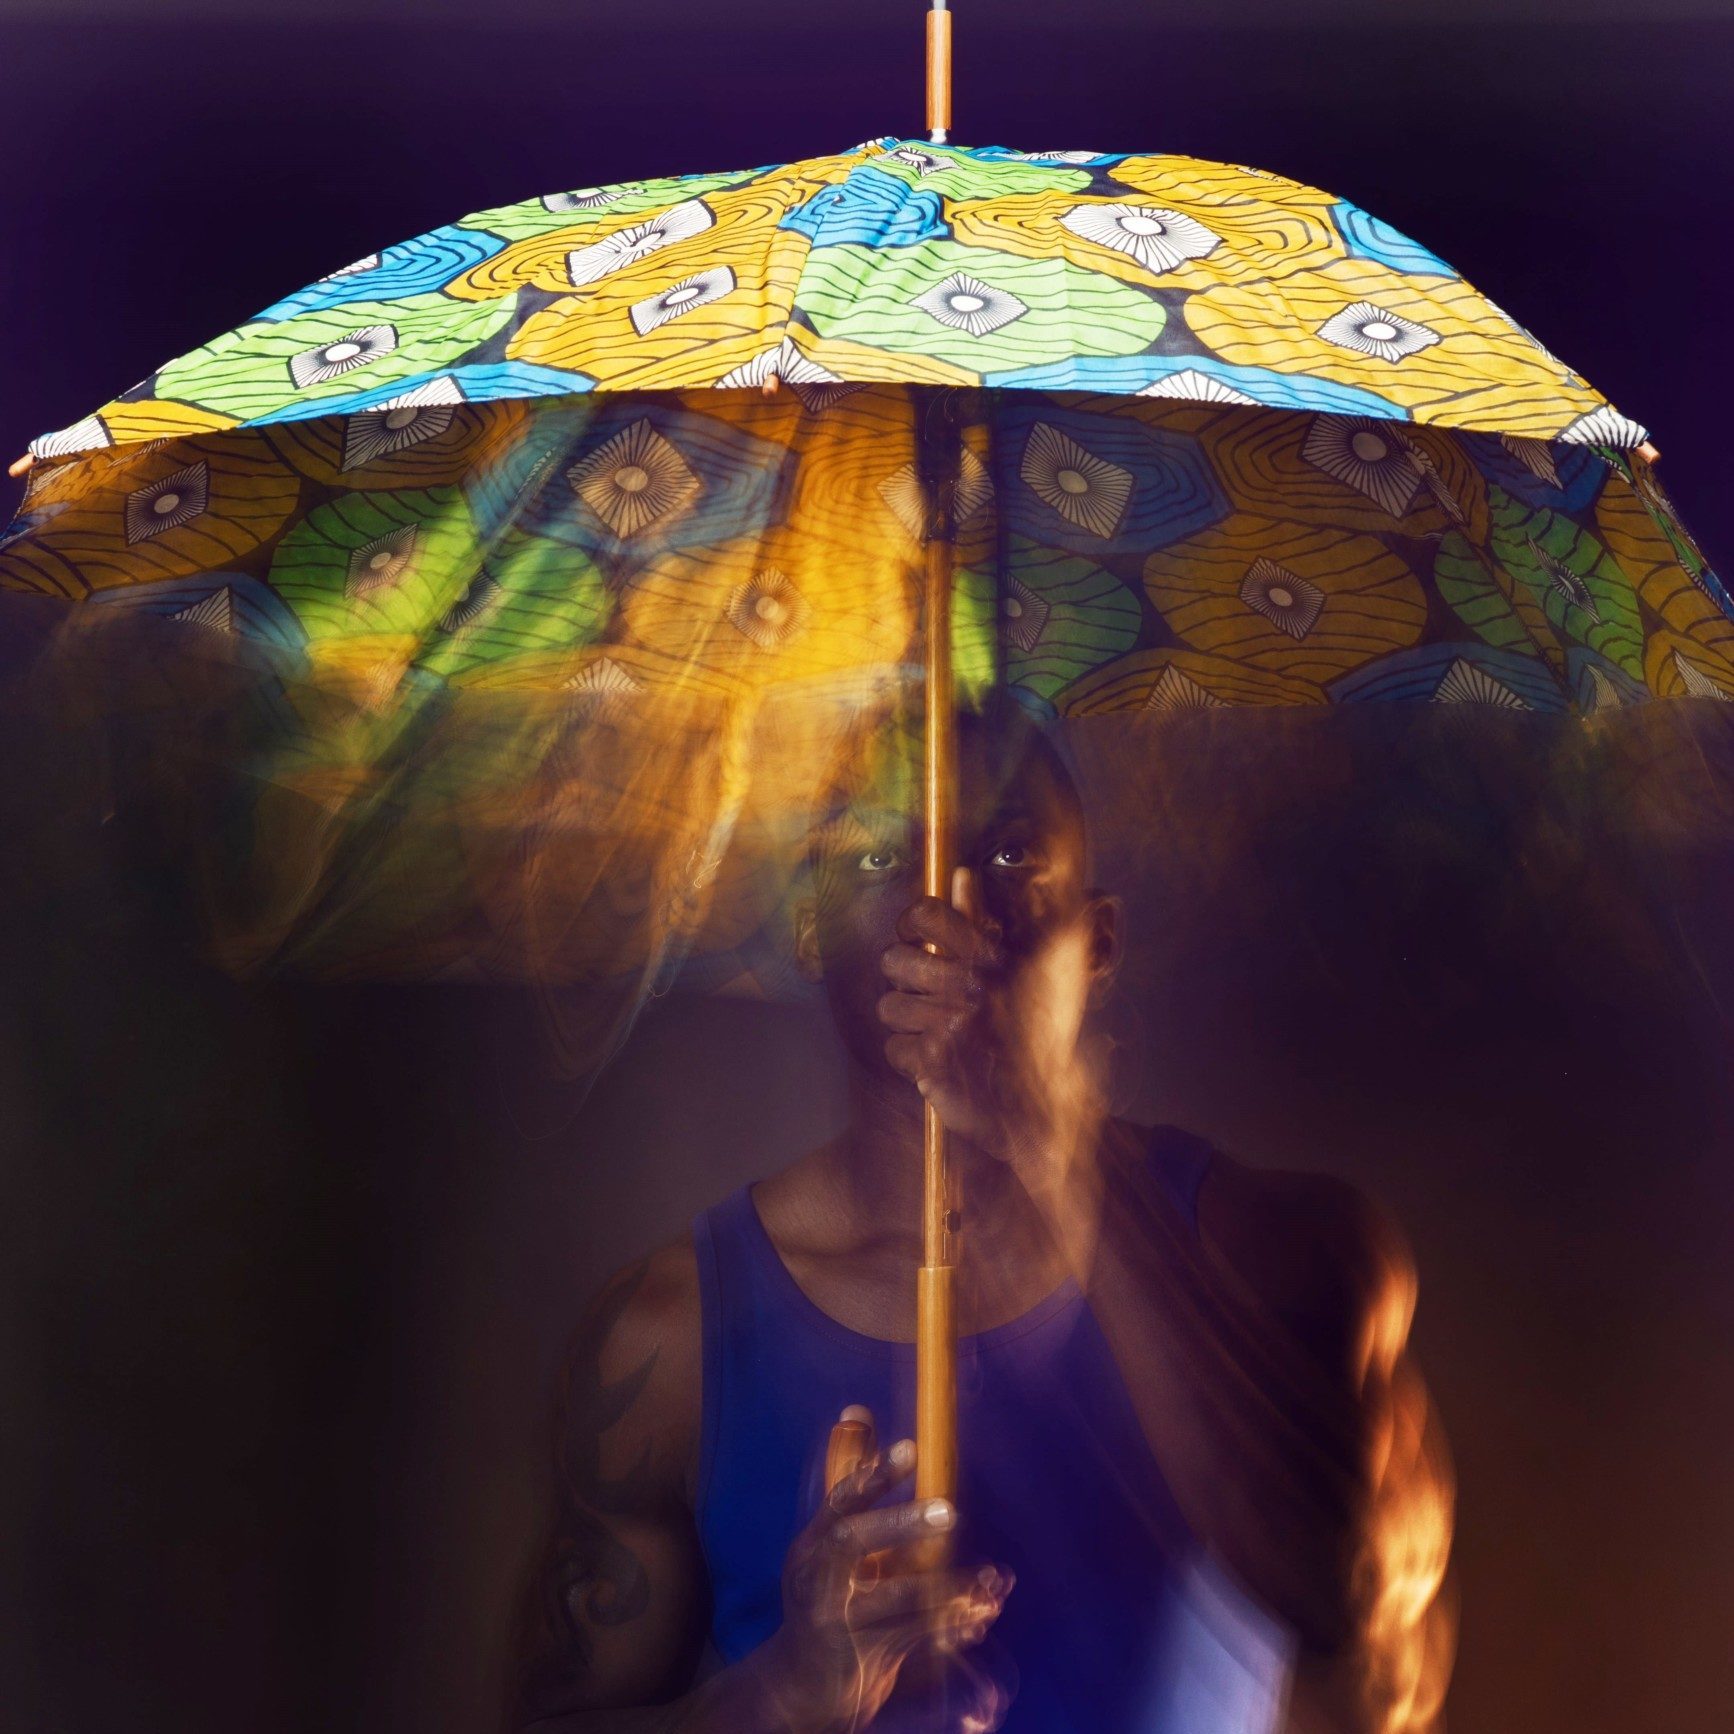 Cape Best presenta l’ombrello per danzare sotto la pioggia